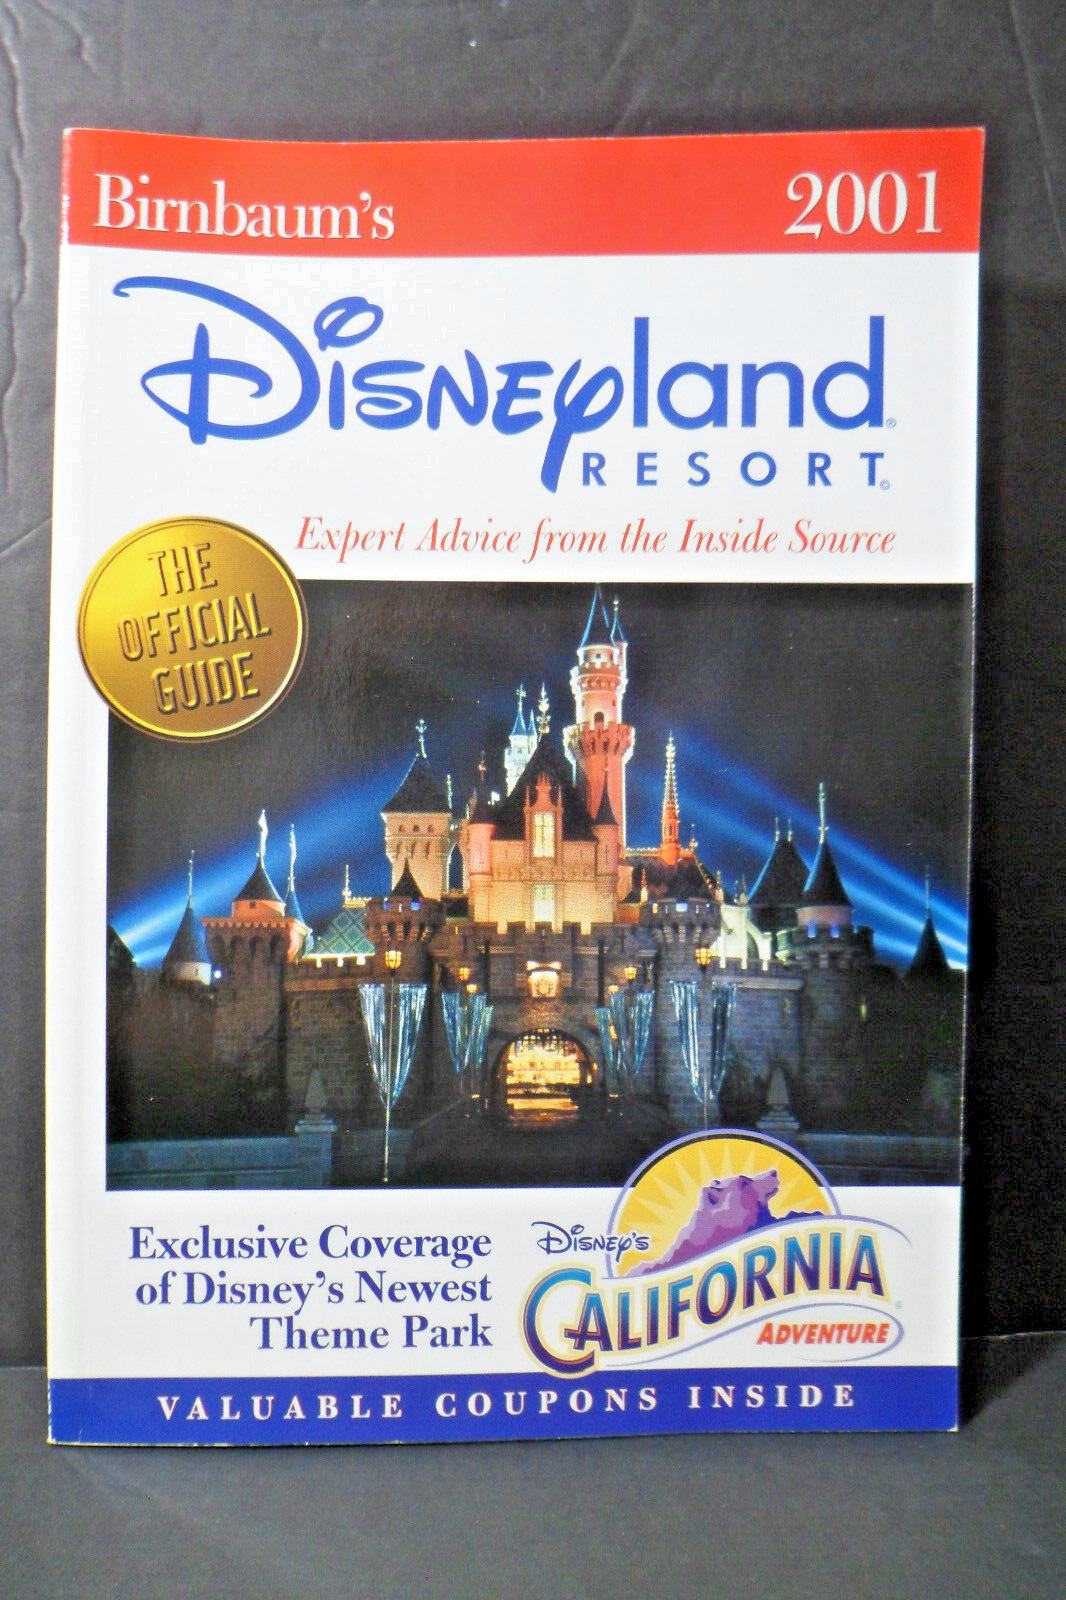 2001 Disneyland Resort including DCA - The Official Guide By Steve Birnbaum